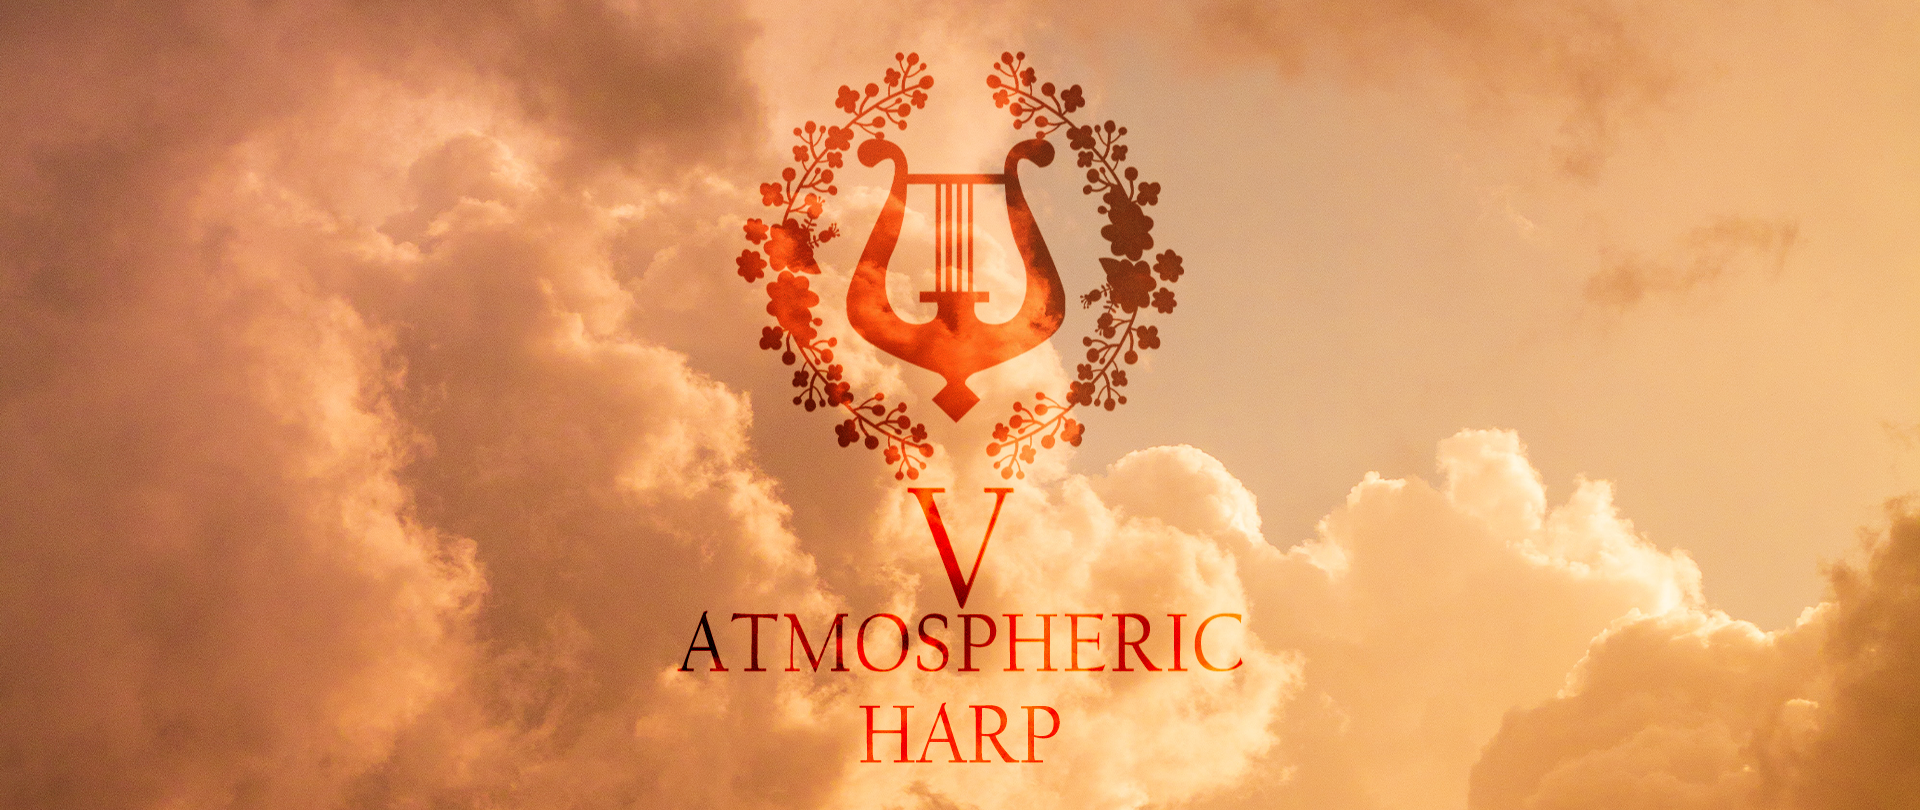 Atmospheric Harp Music V